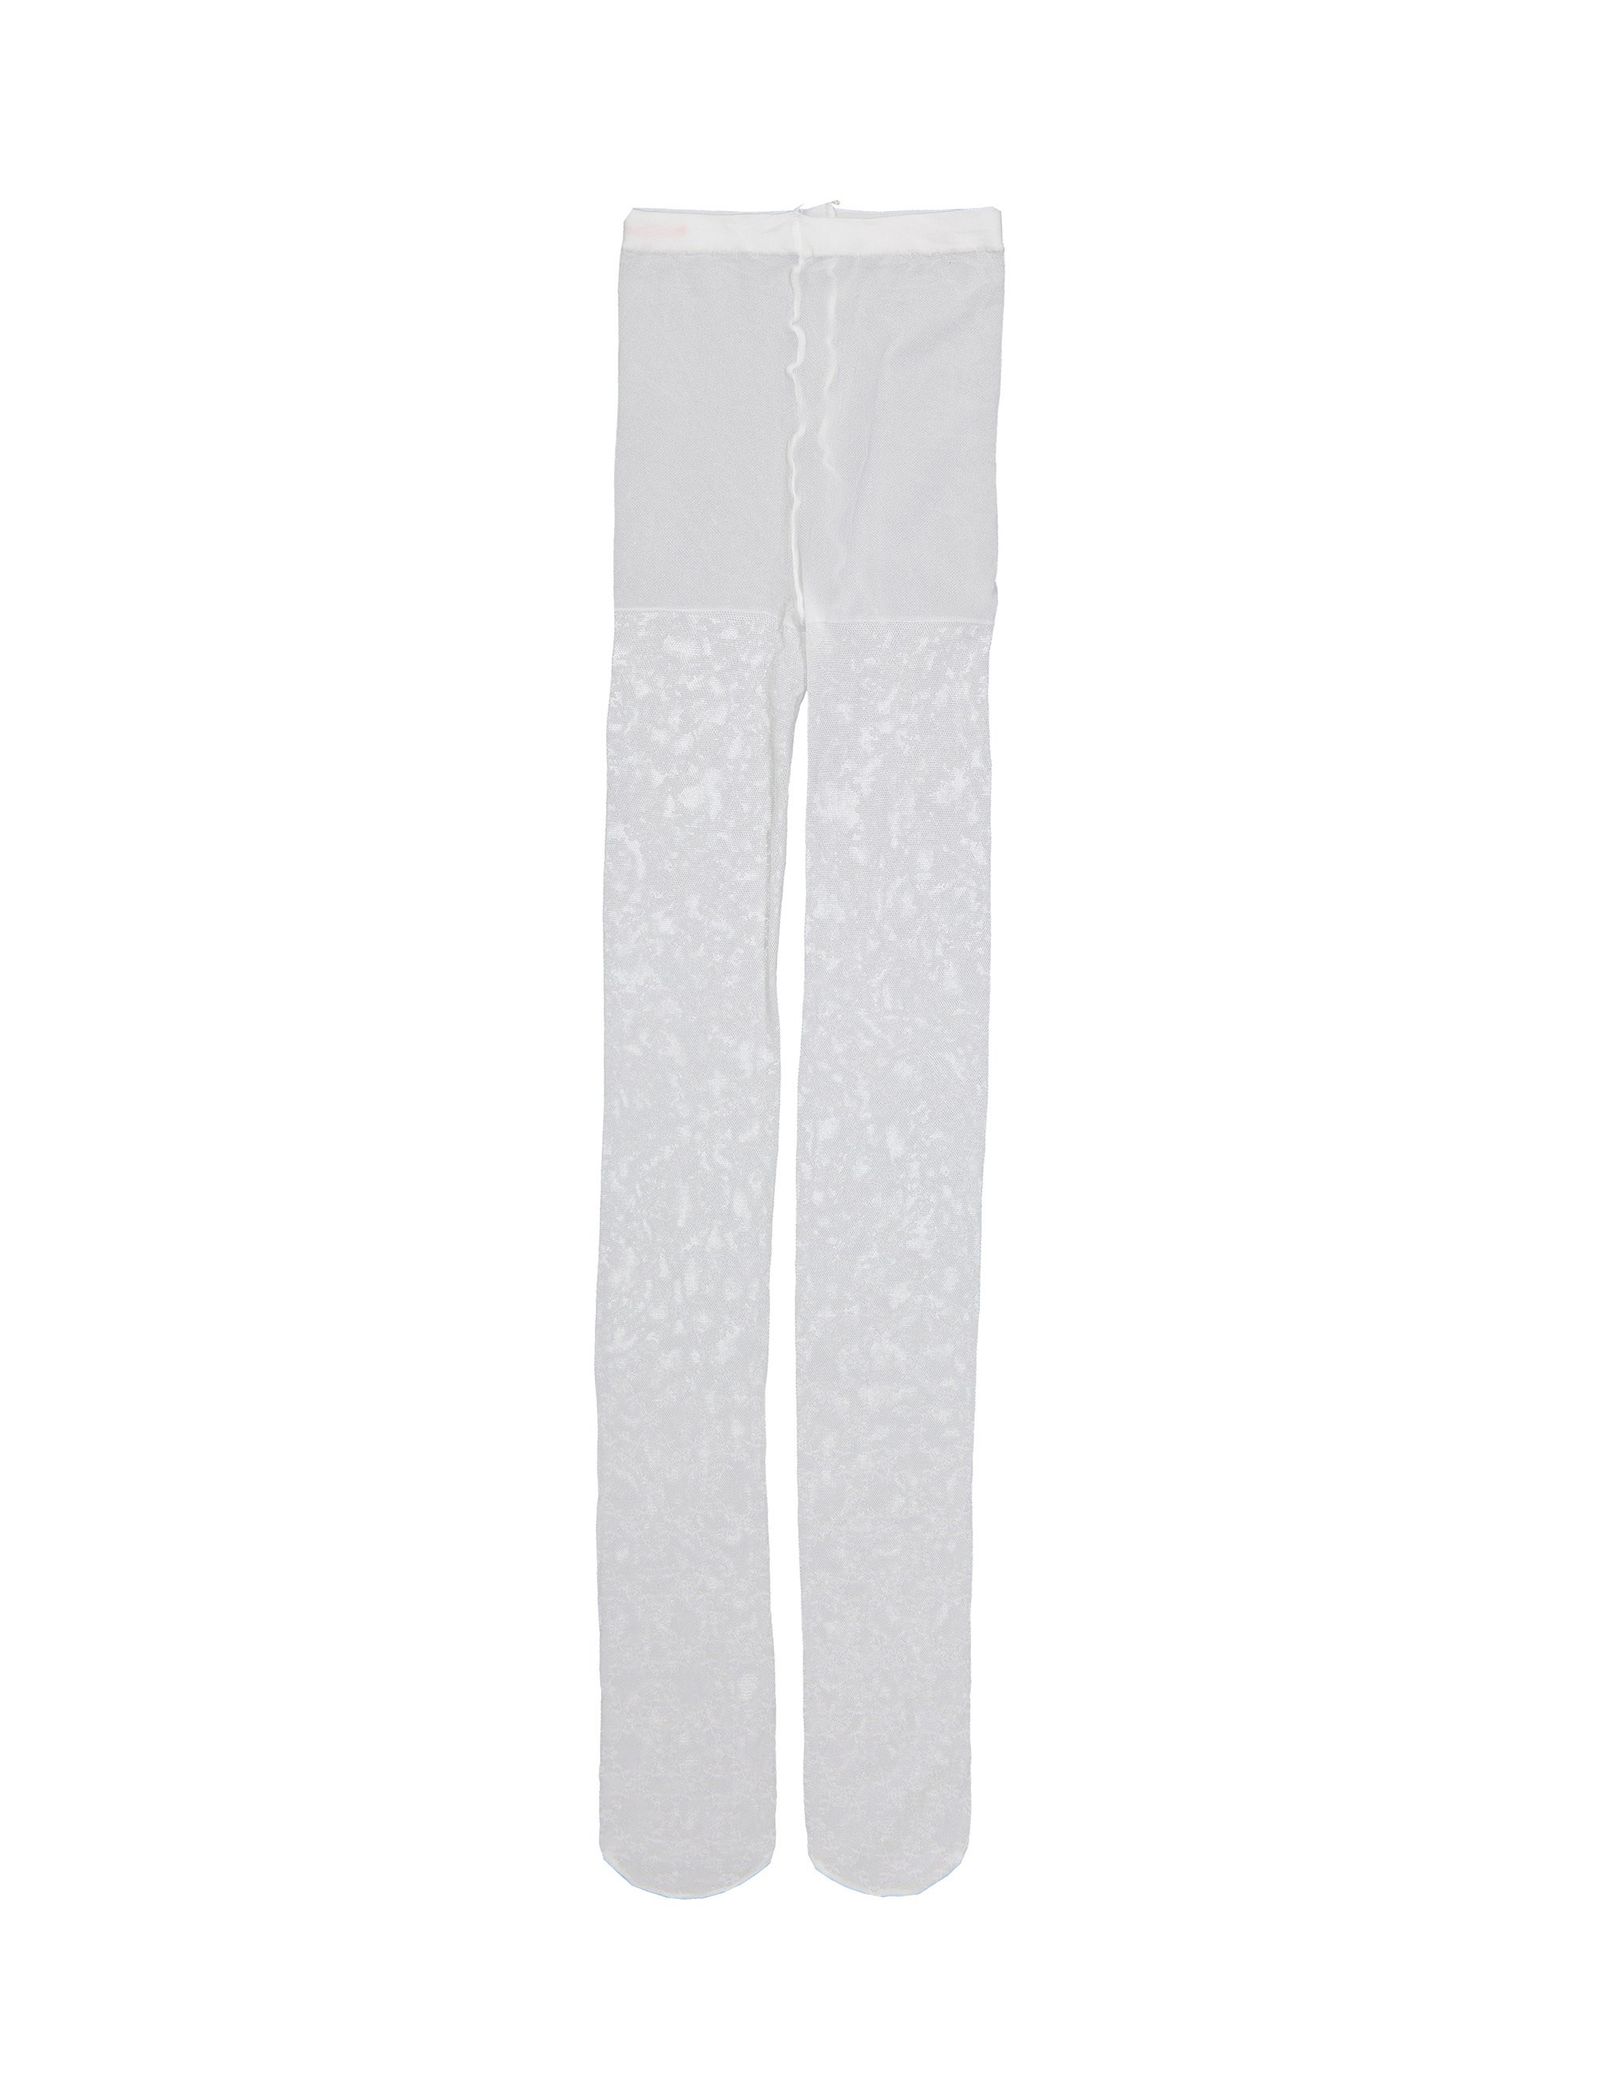 جوراب شلواری طرح دار دخترانه - مانسون چیلدرن - سفيد - 2